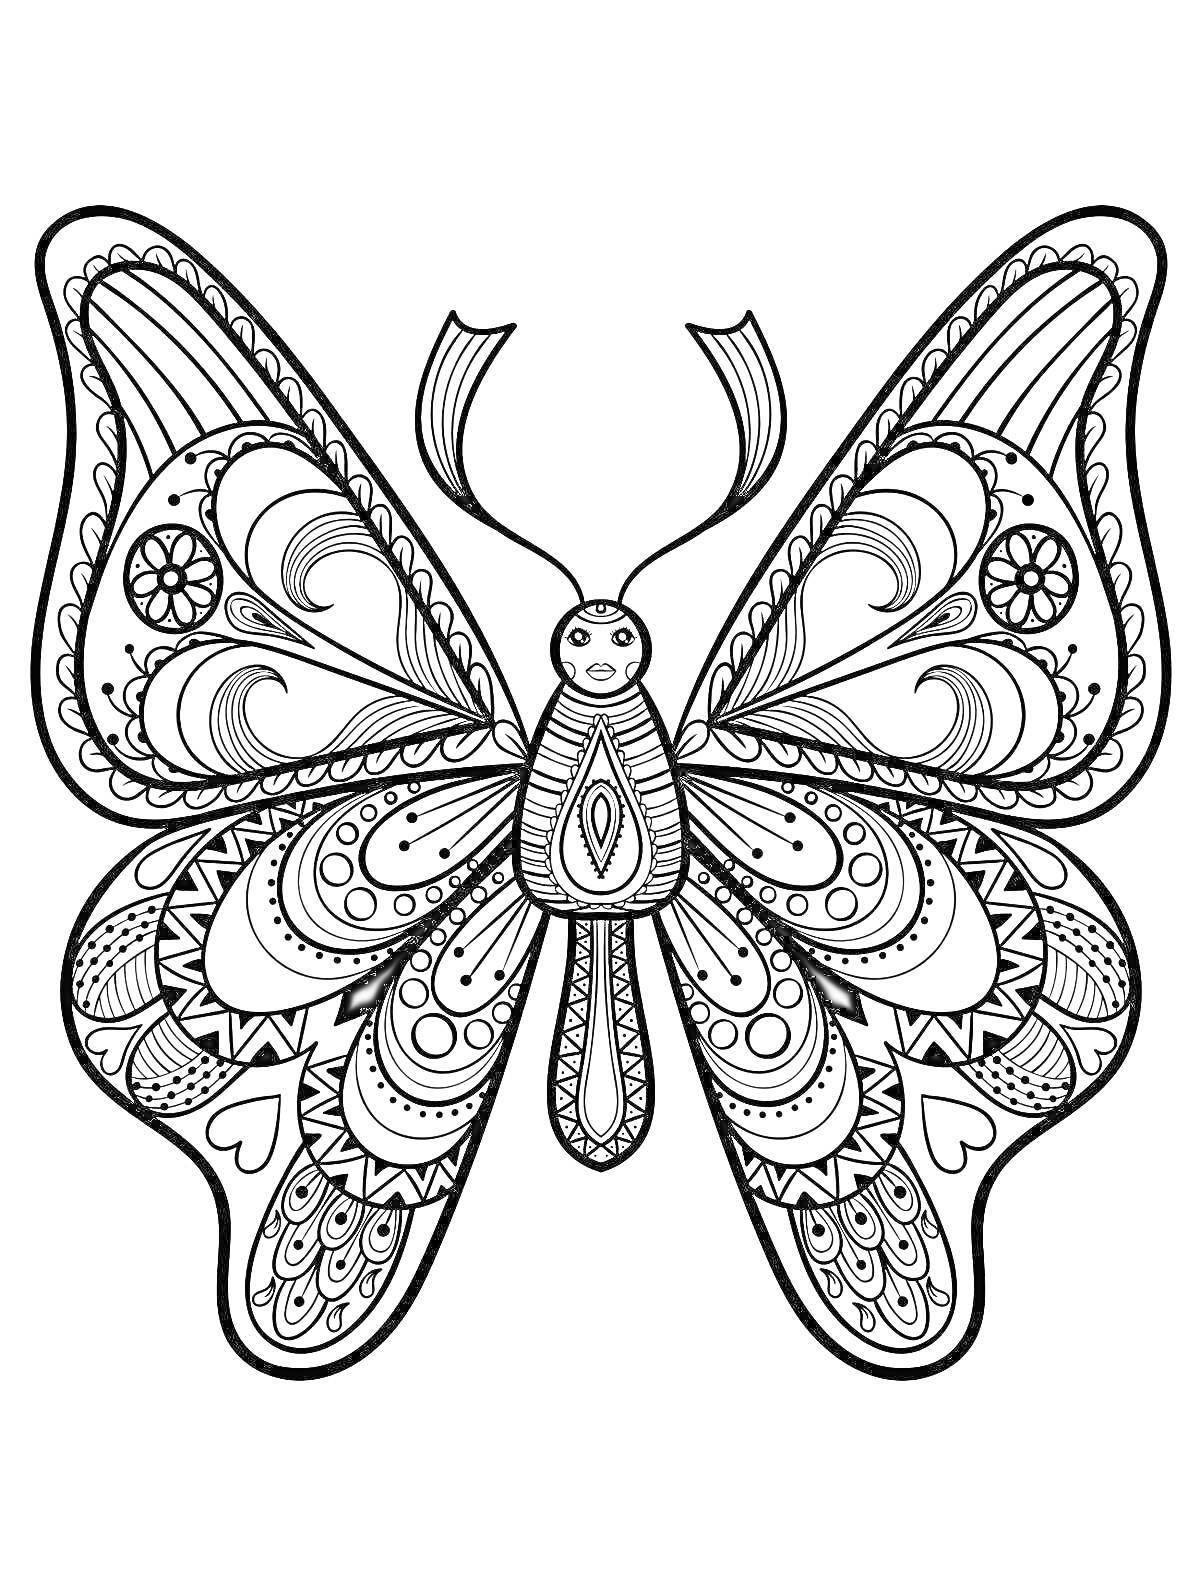 Раскраска бабочка с узорами, сердцами и завитками на крыльях